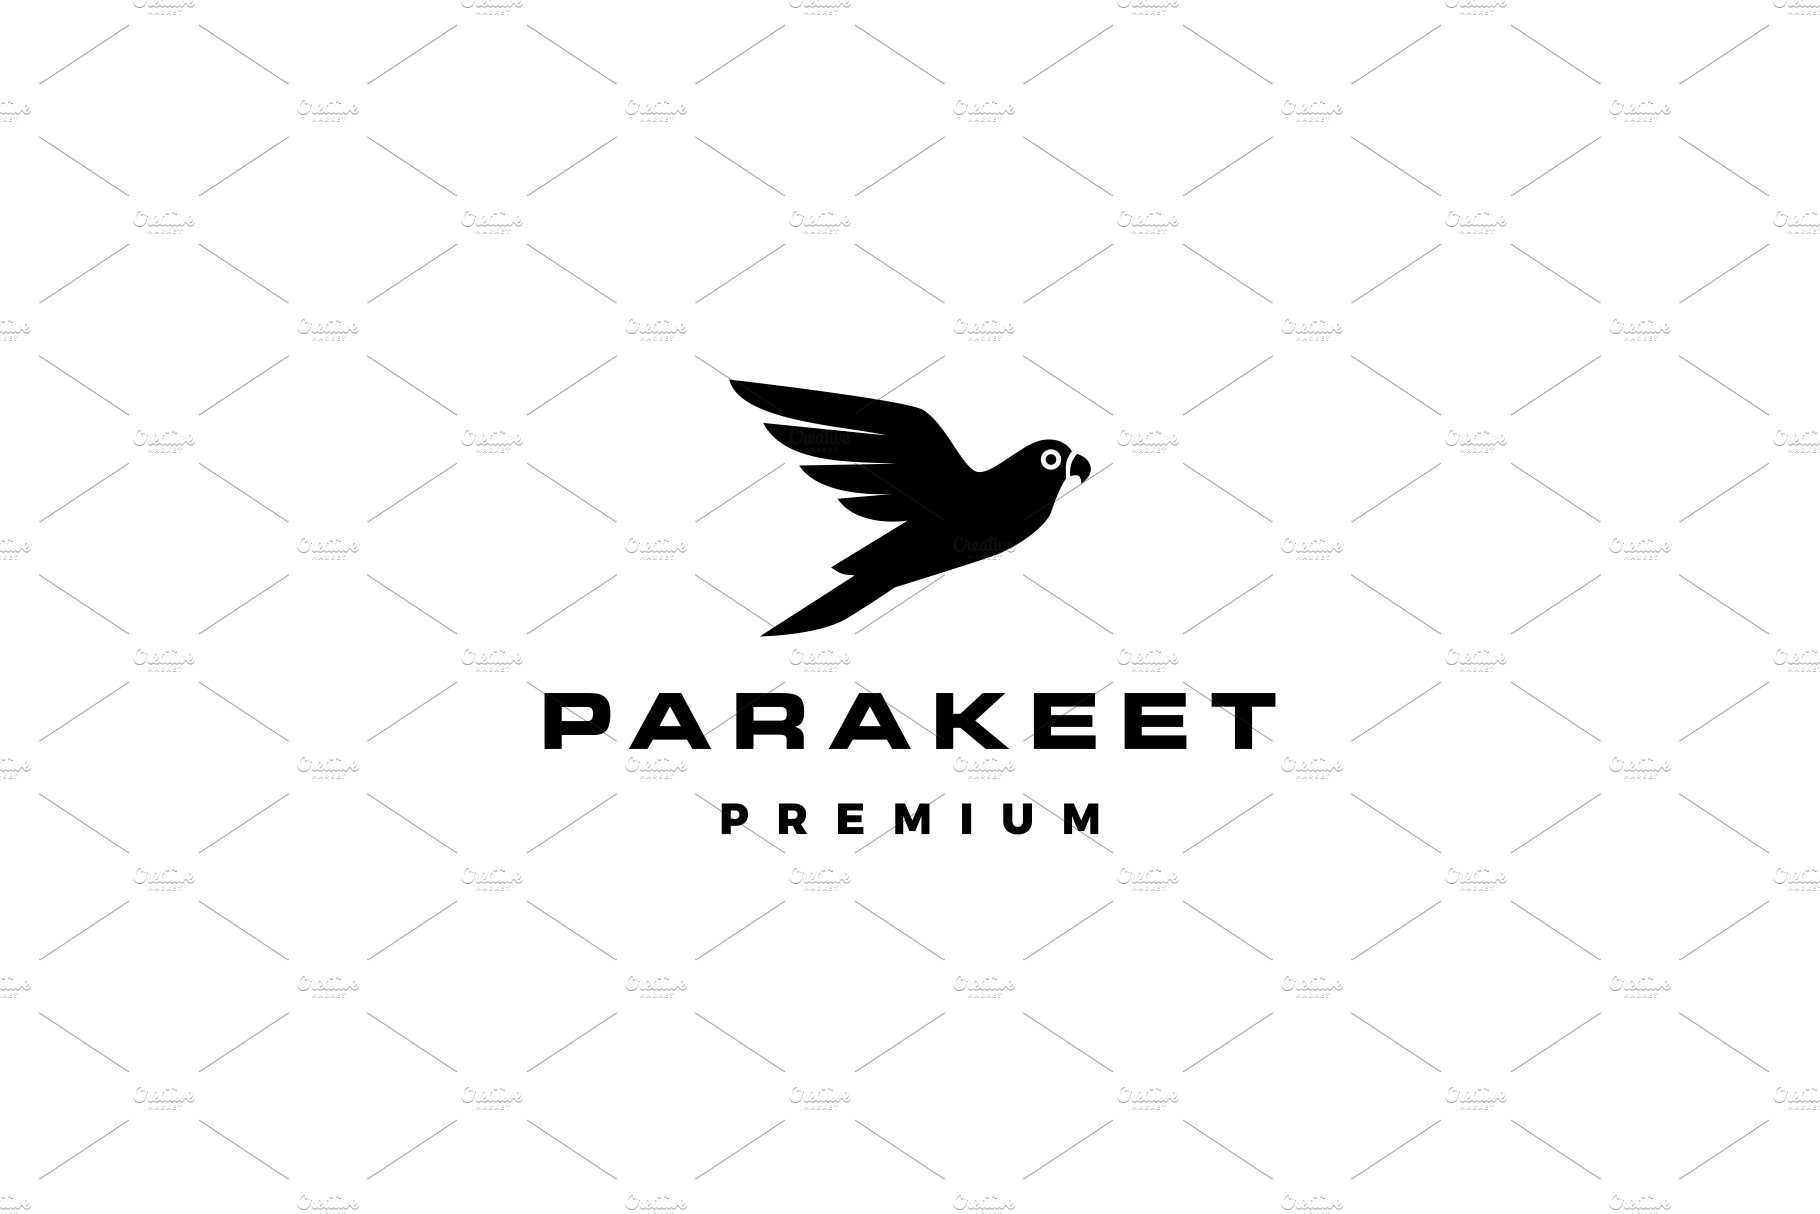 parakeet bird logo vector icon cover image.